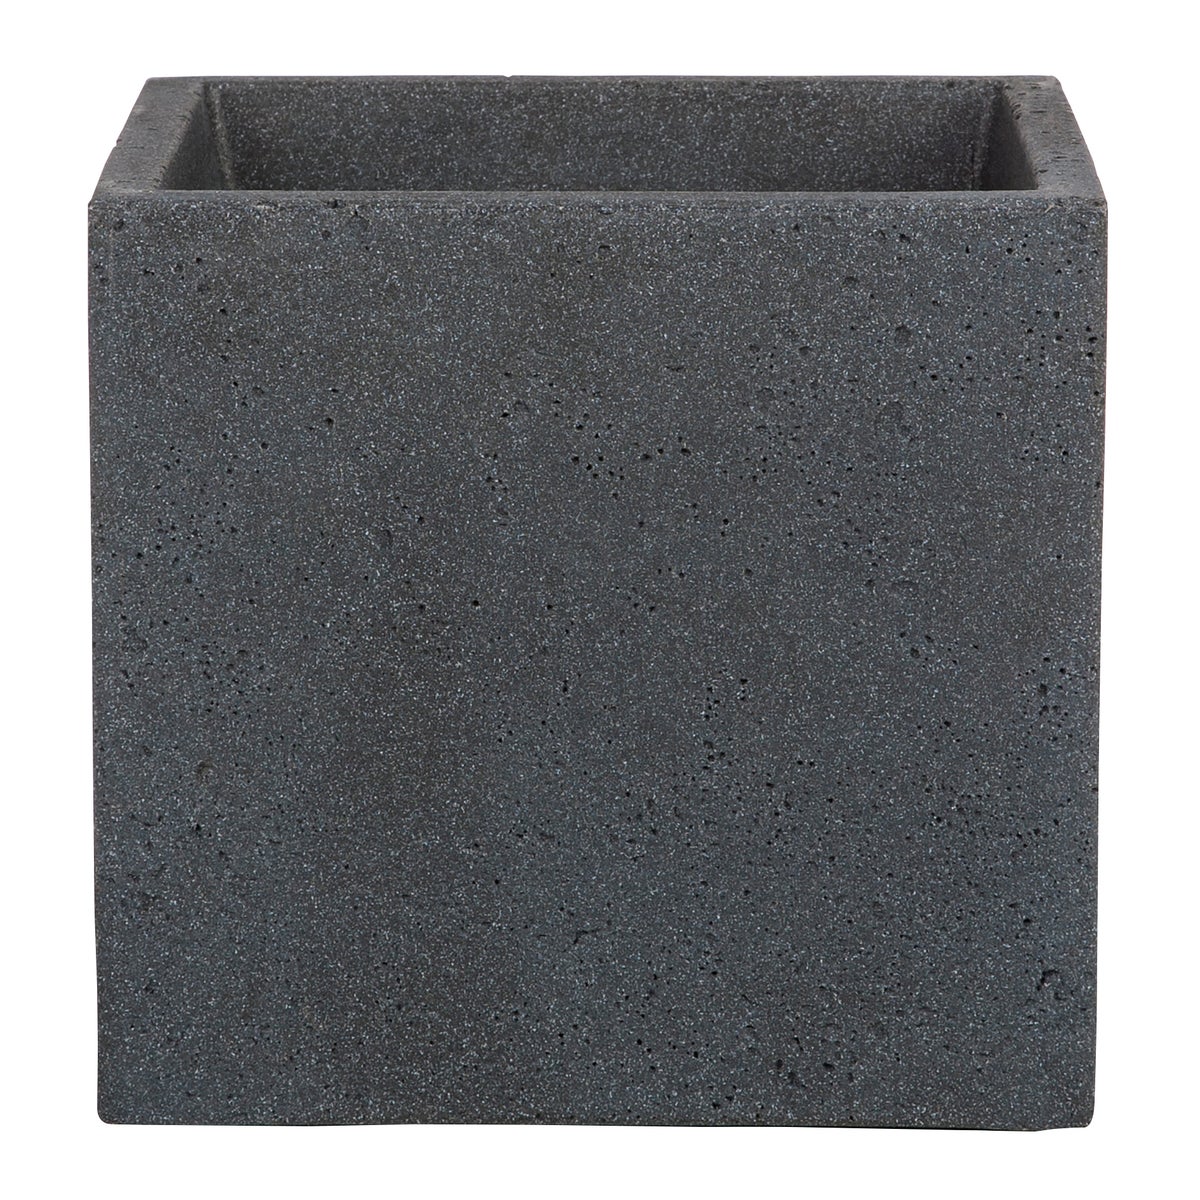 Scheurich C-Cube 30, Pflanzgefäß/Blumentopf/Pflanzkübel, quadratisch,  aus Kunststoff Farbe: Stony Black, 28,5 cm Durchmesser, 27 cm hoch, 18 l Vol.